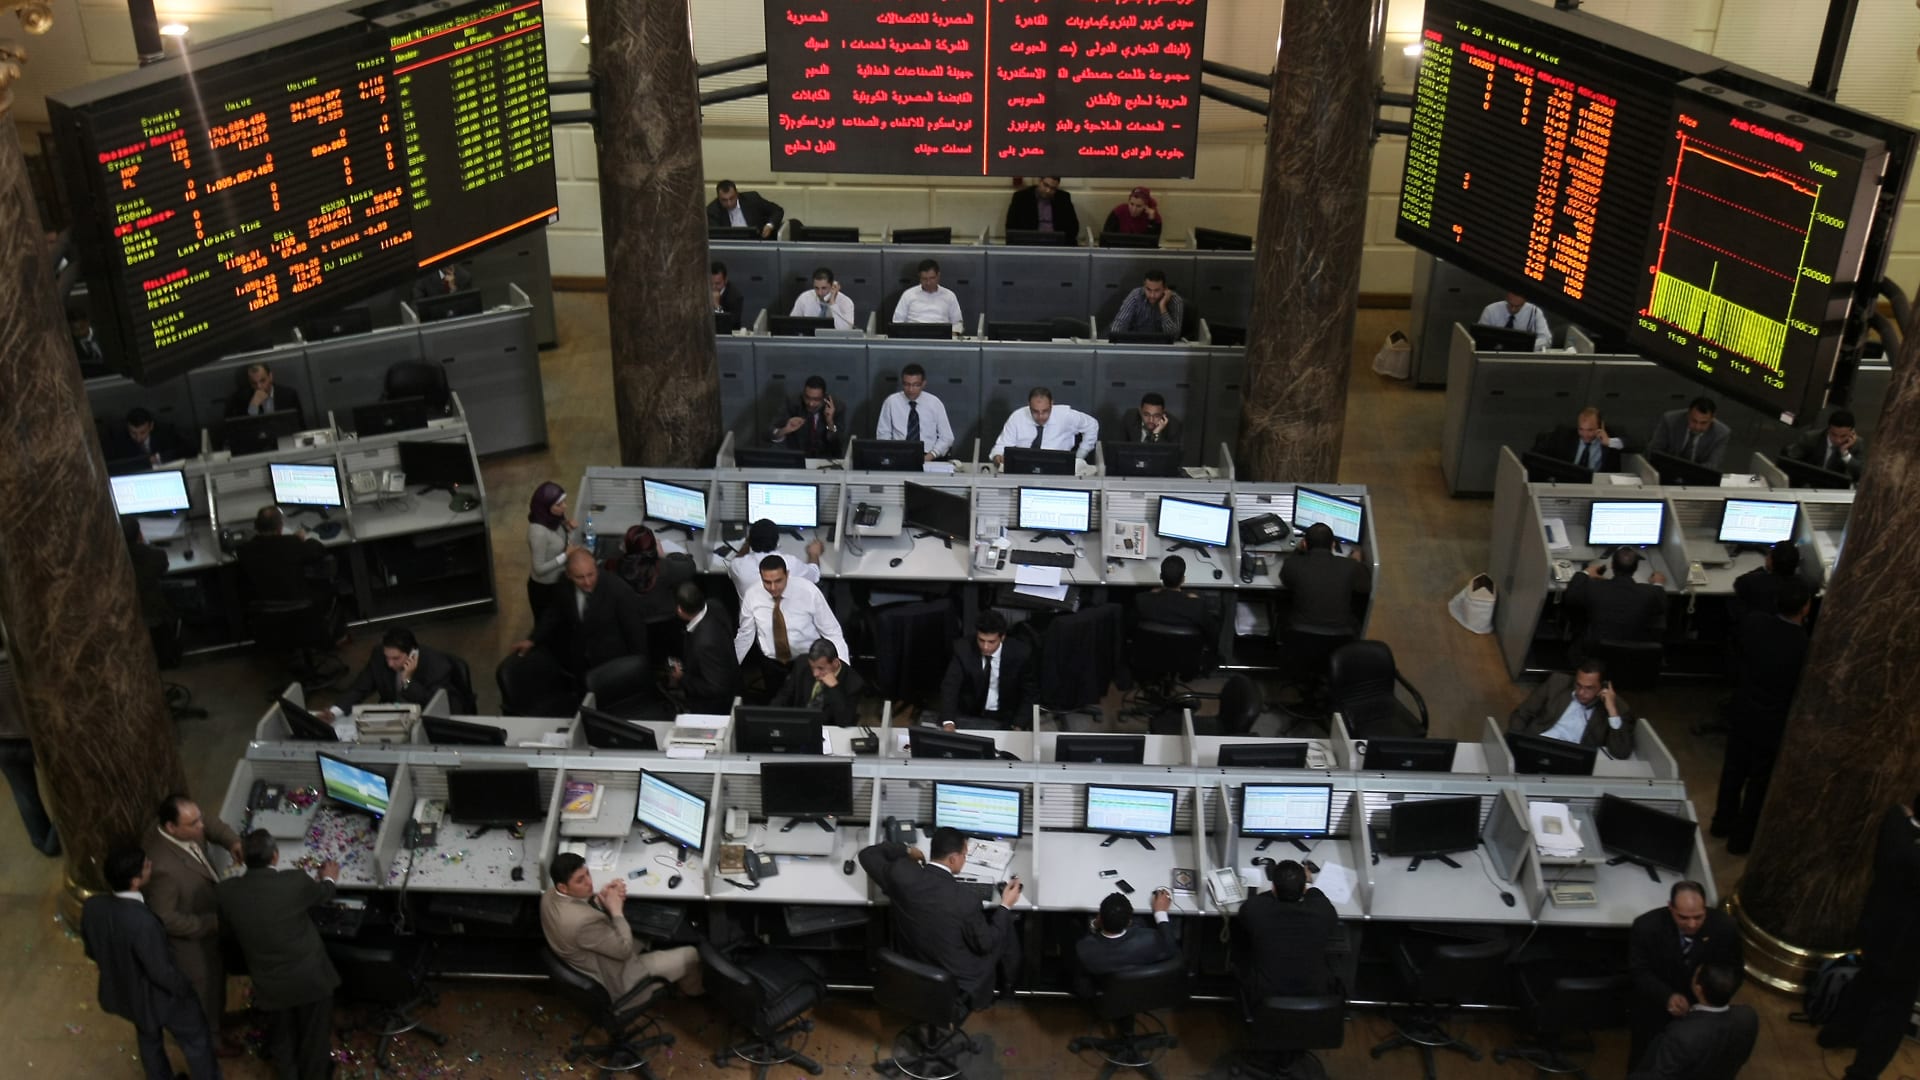 تداولات أنشط 5 شركات وساطة مالية بالبورصة المصرية خلال الأسبوع الماضي 